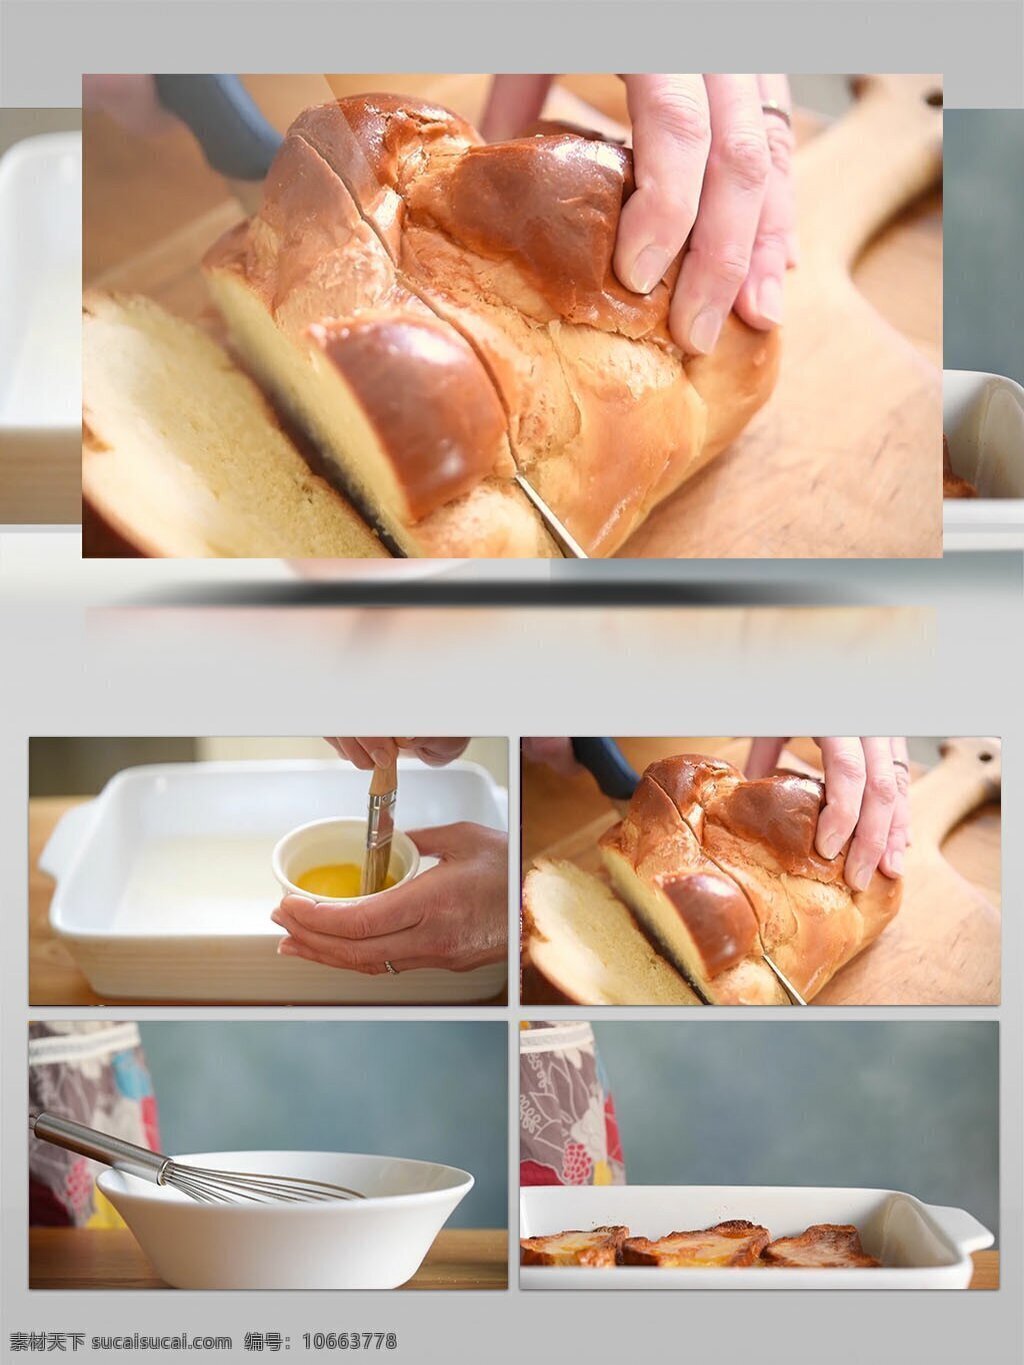 面包 制作 视频 实拍 面包制作 切面包 视频实拍素材